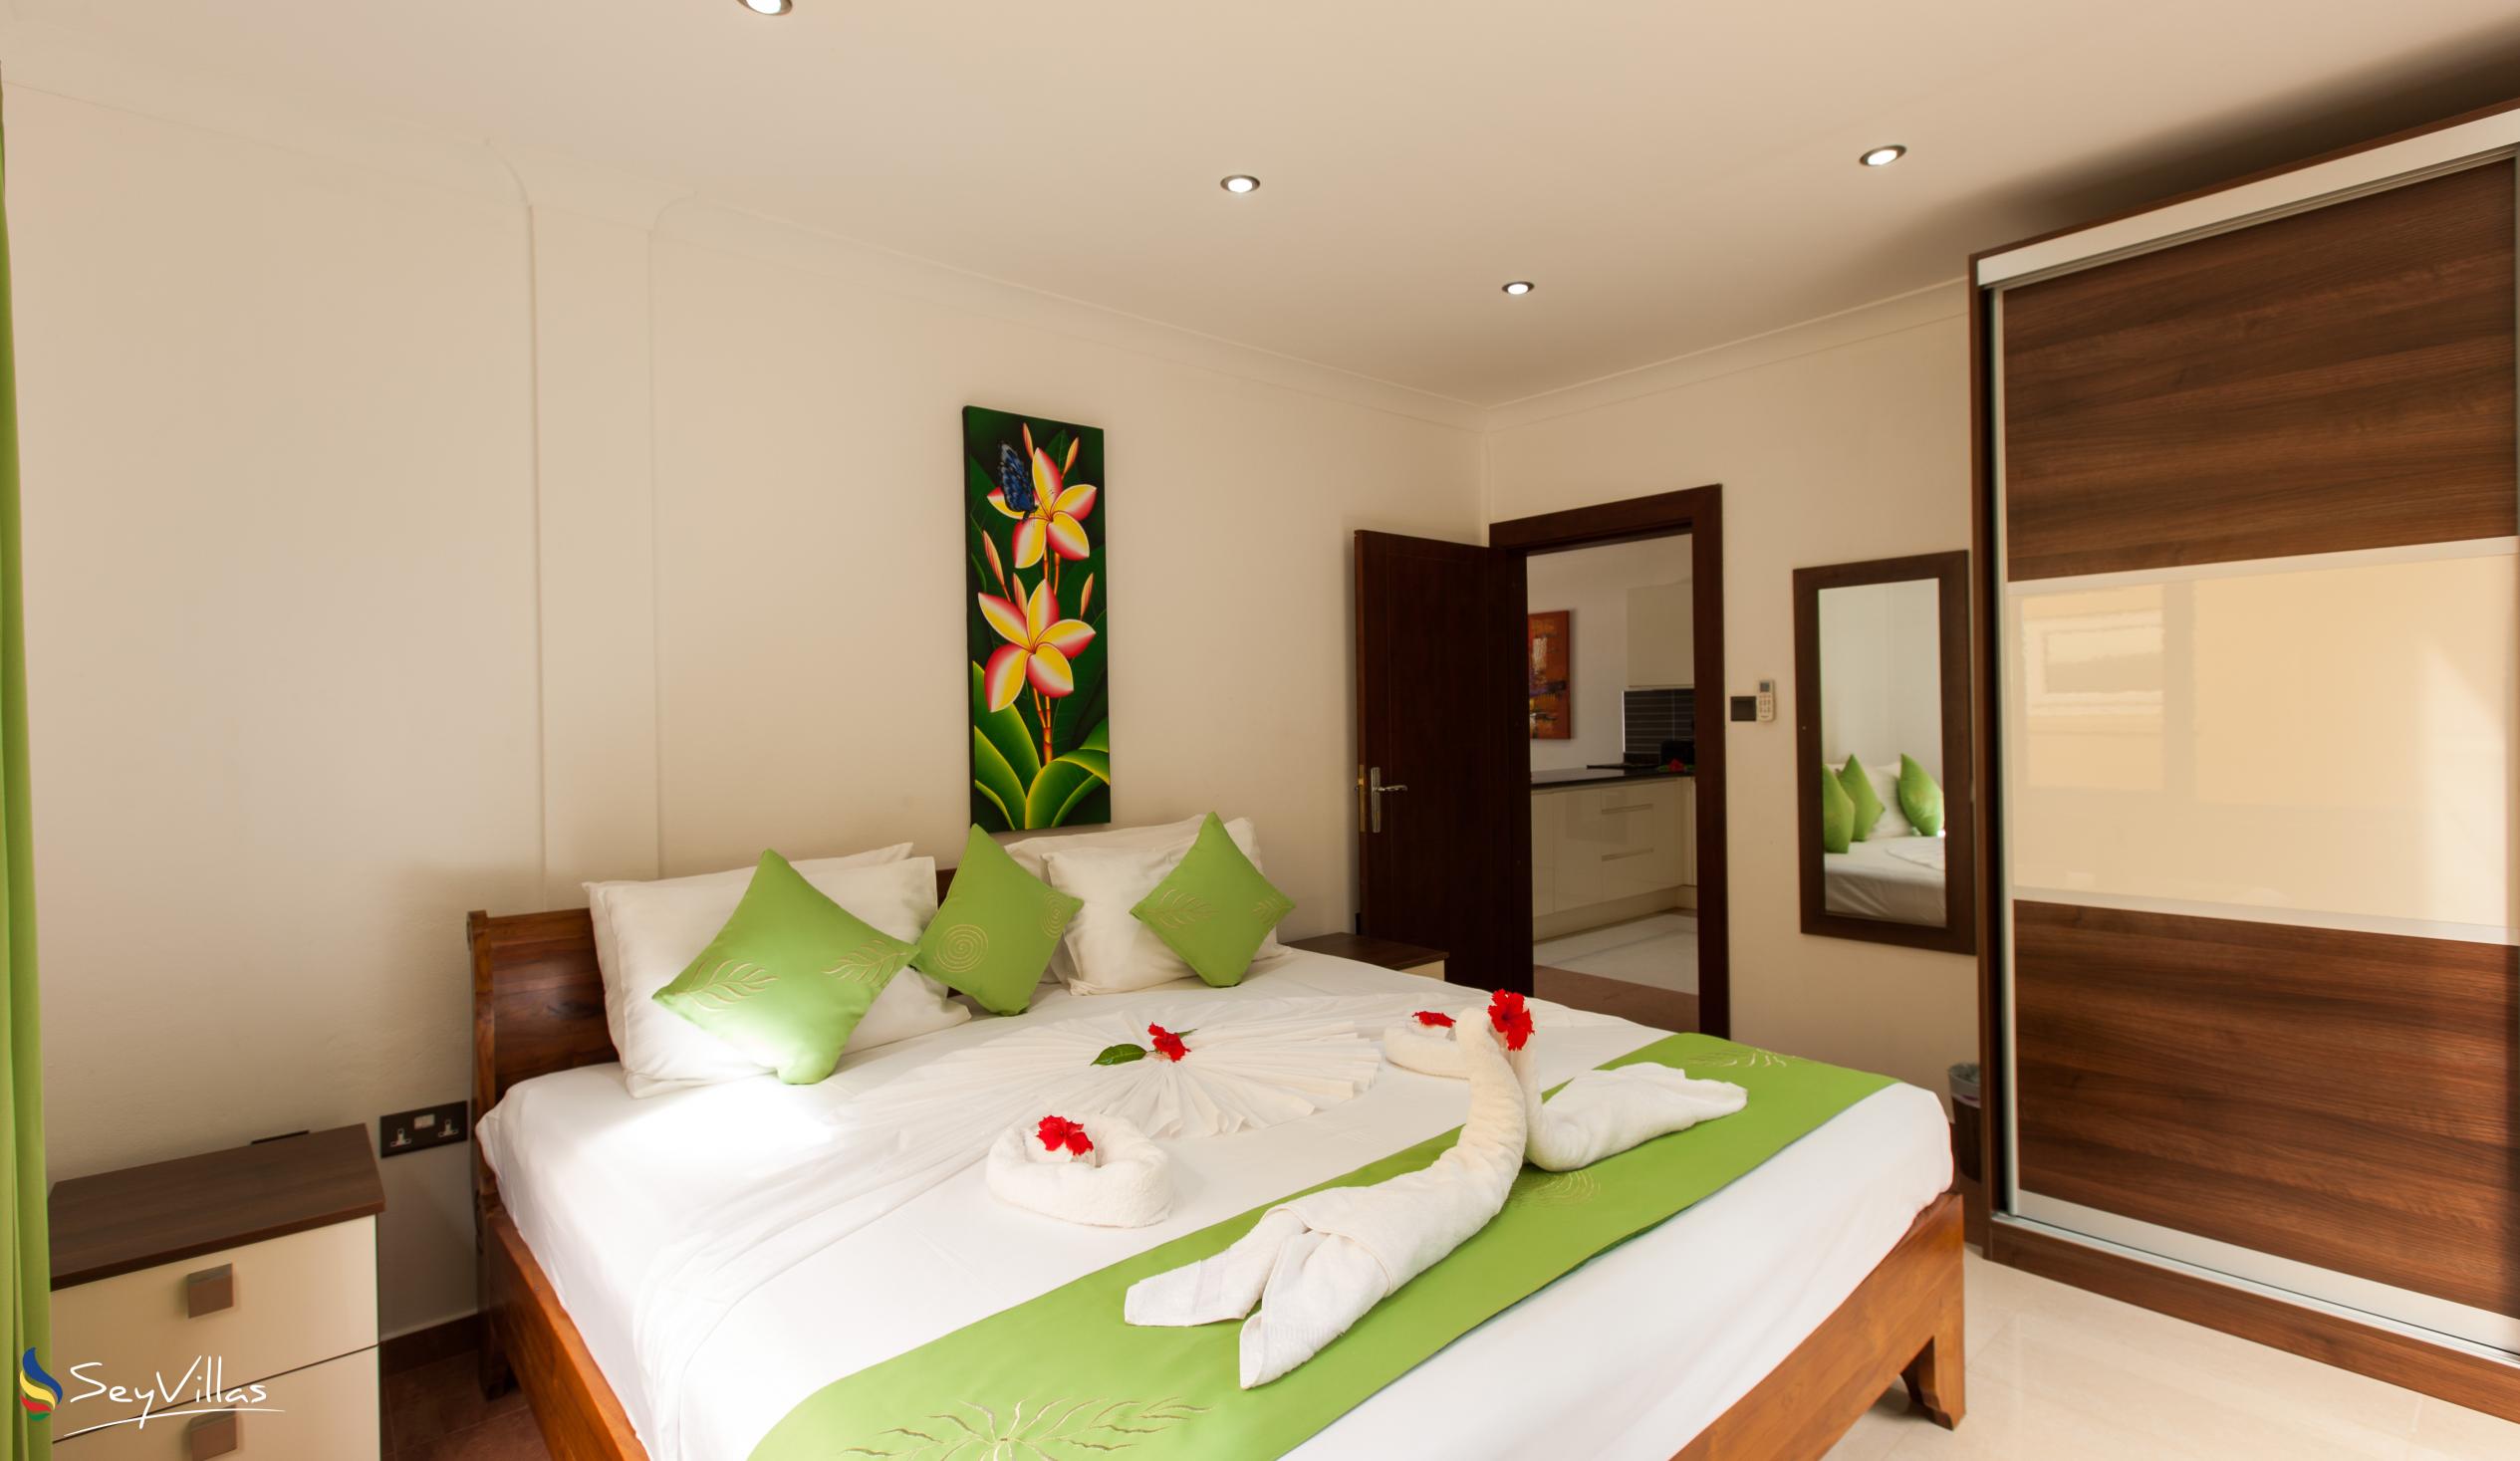 Foto 53: YASAD Luxury Beach Residence - Appartement mit 2 Schlafzimmern - Praslin (Seychellen)